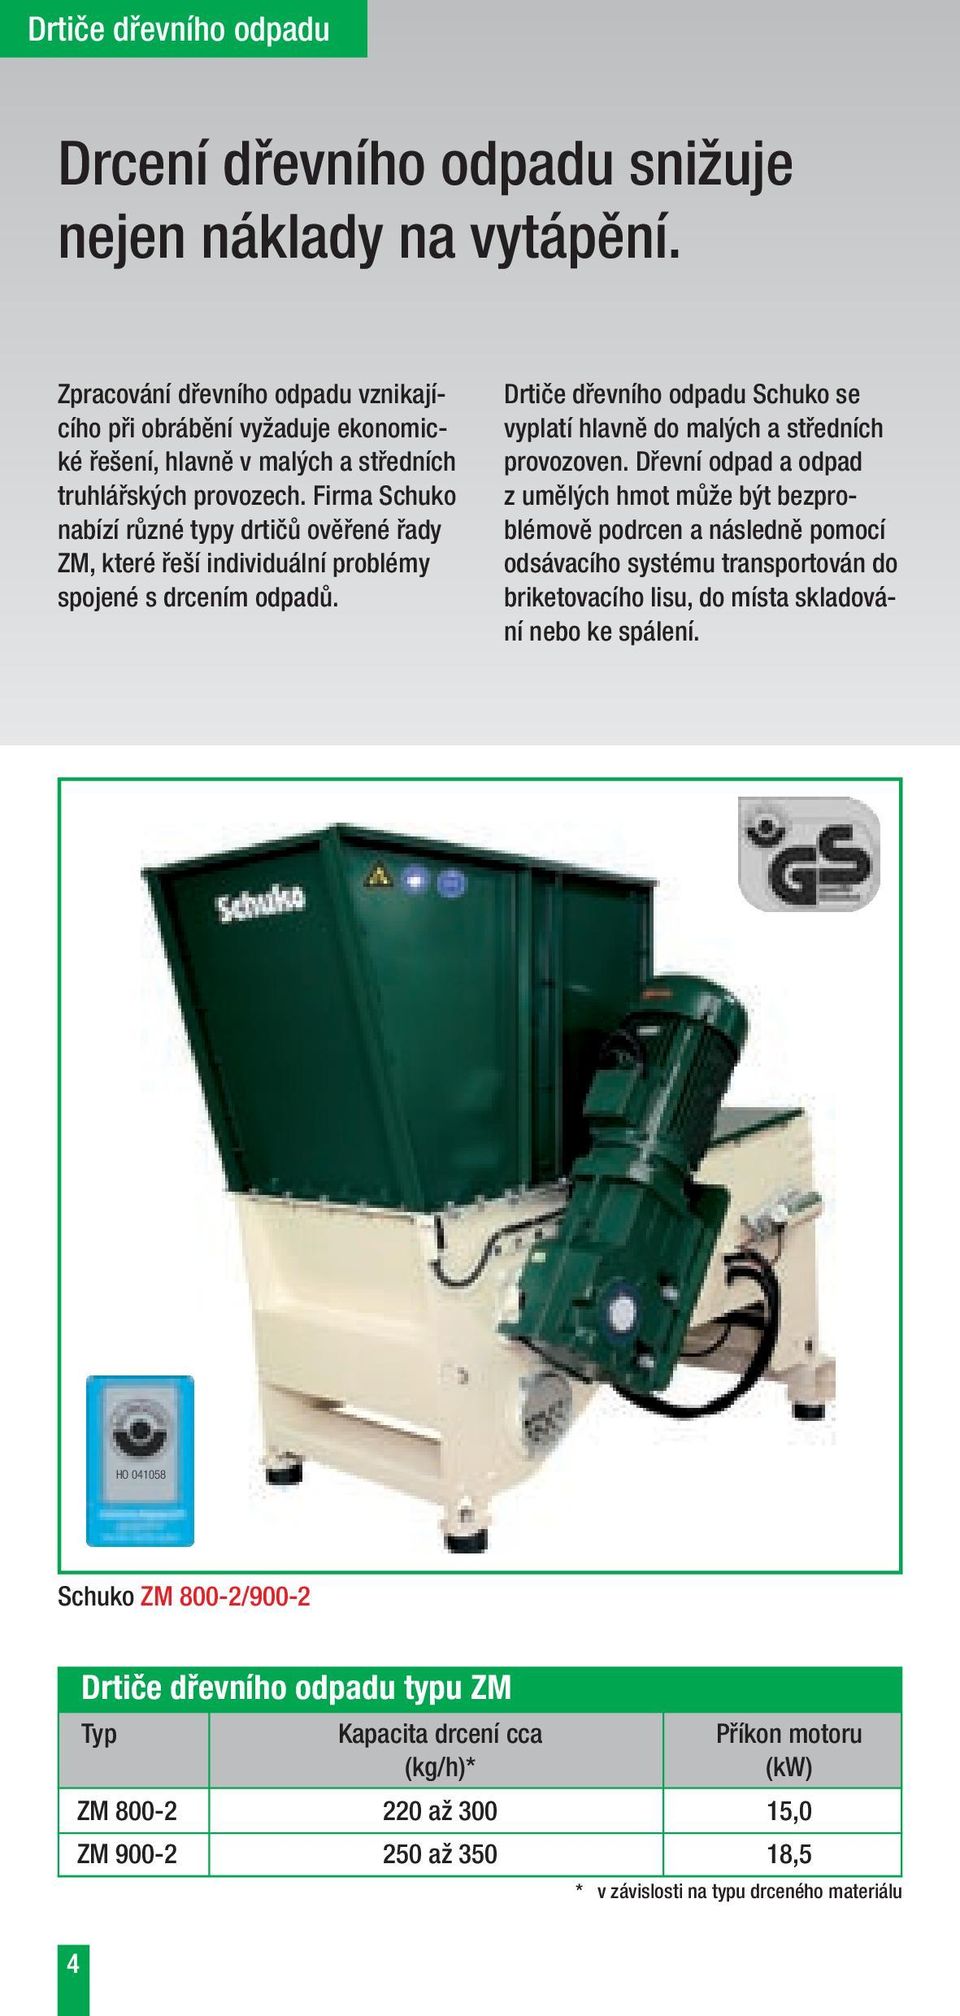 Firma Schuko nabízí různé typy drtičů ověřené řady ZM, které řeší individuální problémy spojené s drcením odpadů. Drtiče dřevního odpadu Schuko se vyplatí hlavně do malých a středních provozoven.